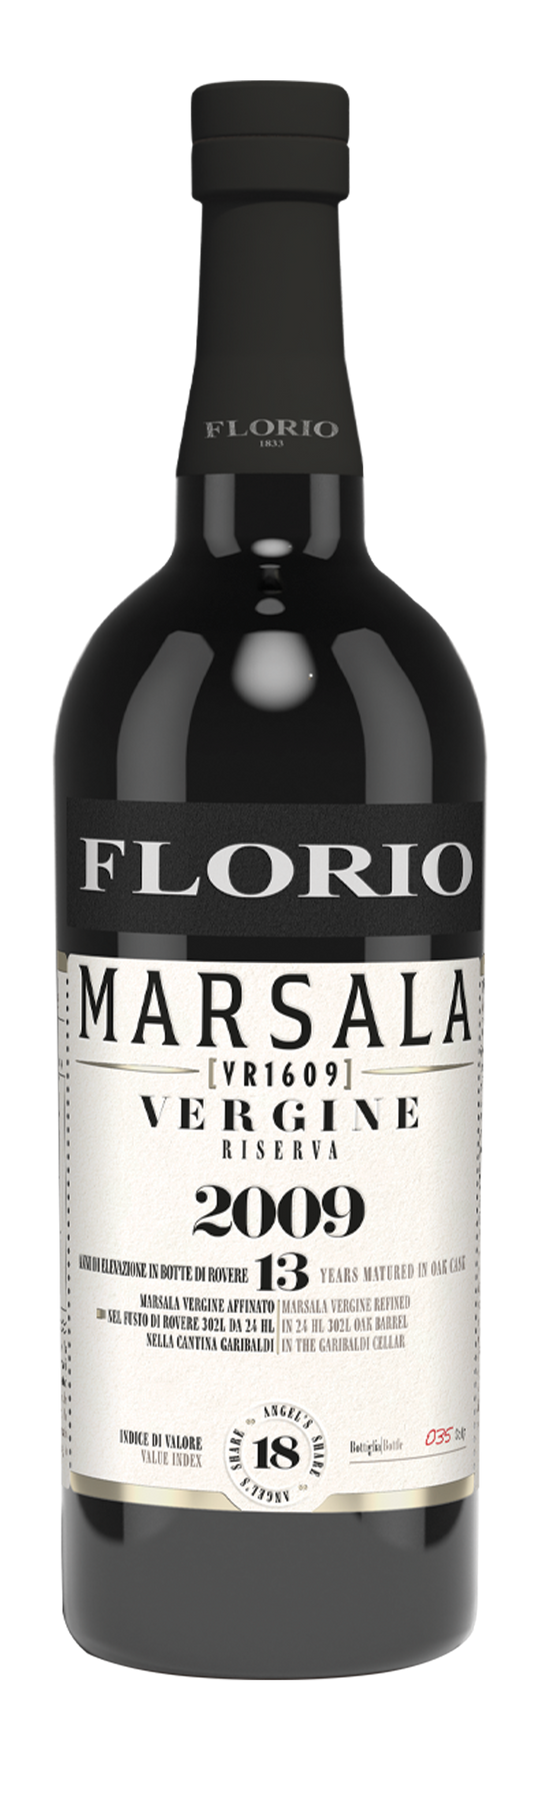 Florio Vergine Classic 18,5% 2009 75cl Marsala